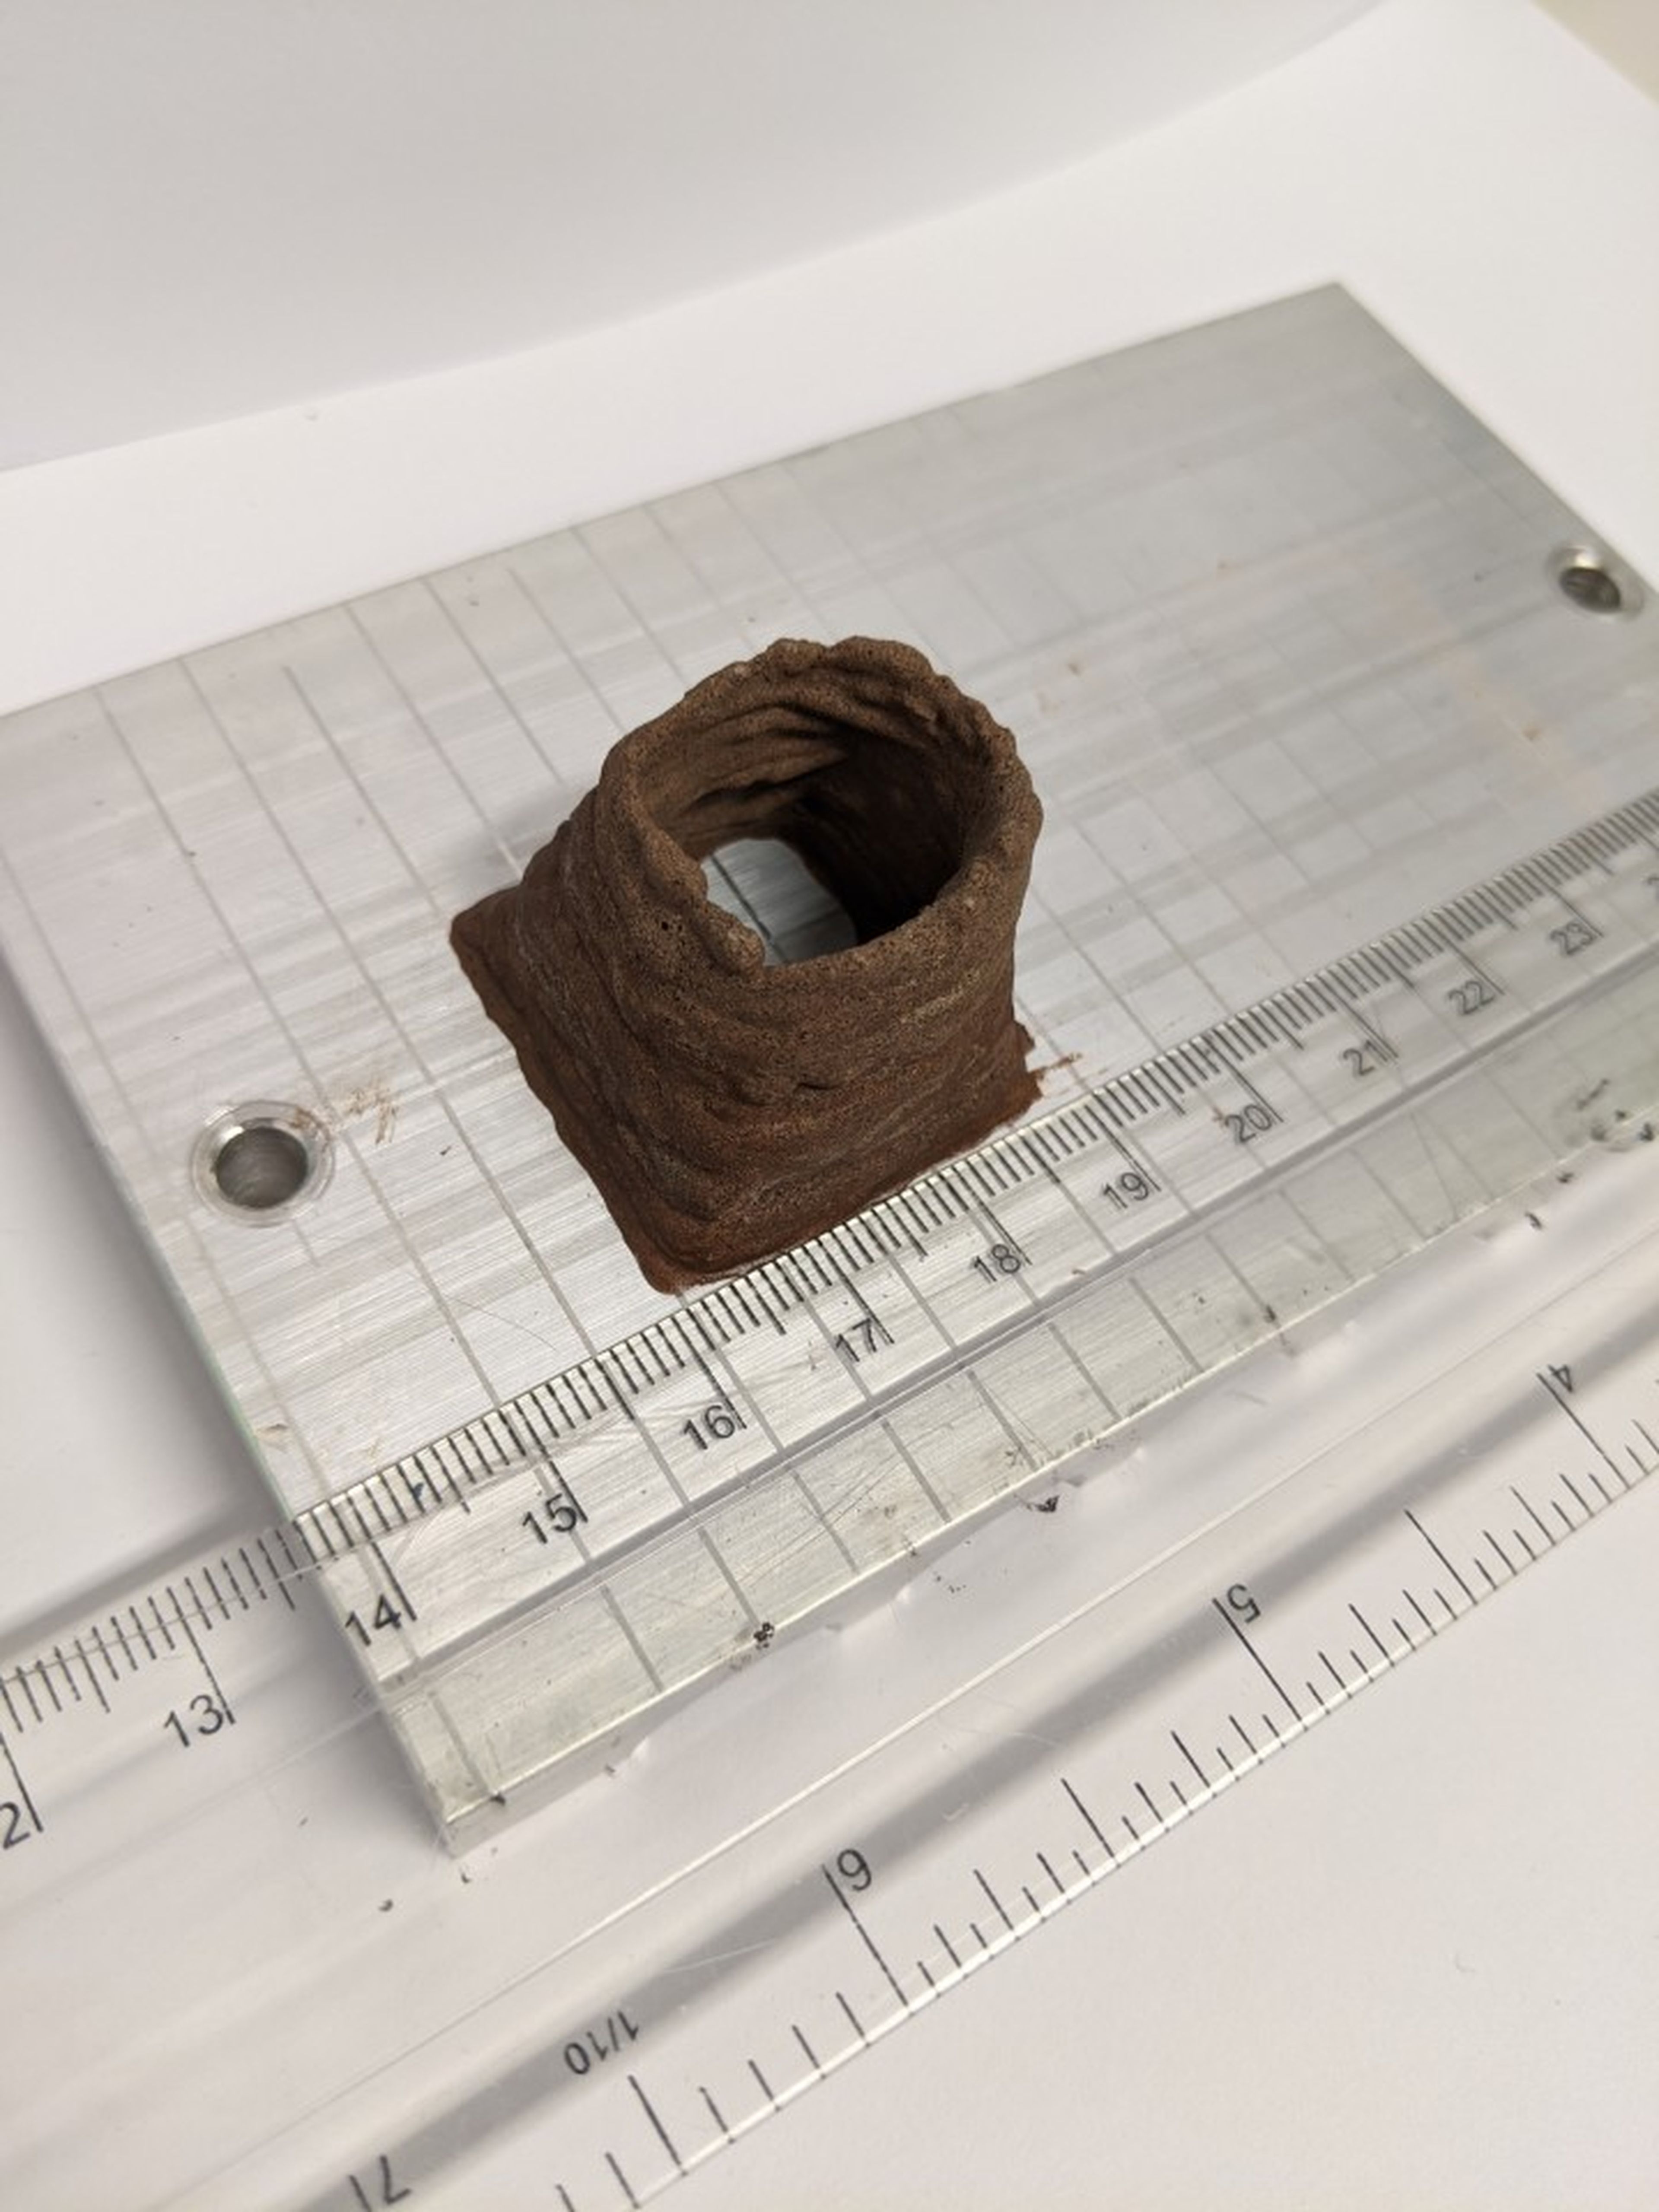 Una pequeña estructura impresa en 3D hecha con suelo de Marte simulado y productos del cuerpo humano.